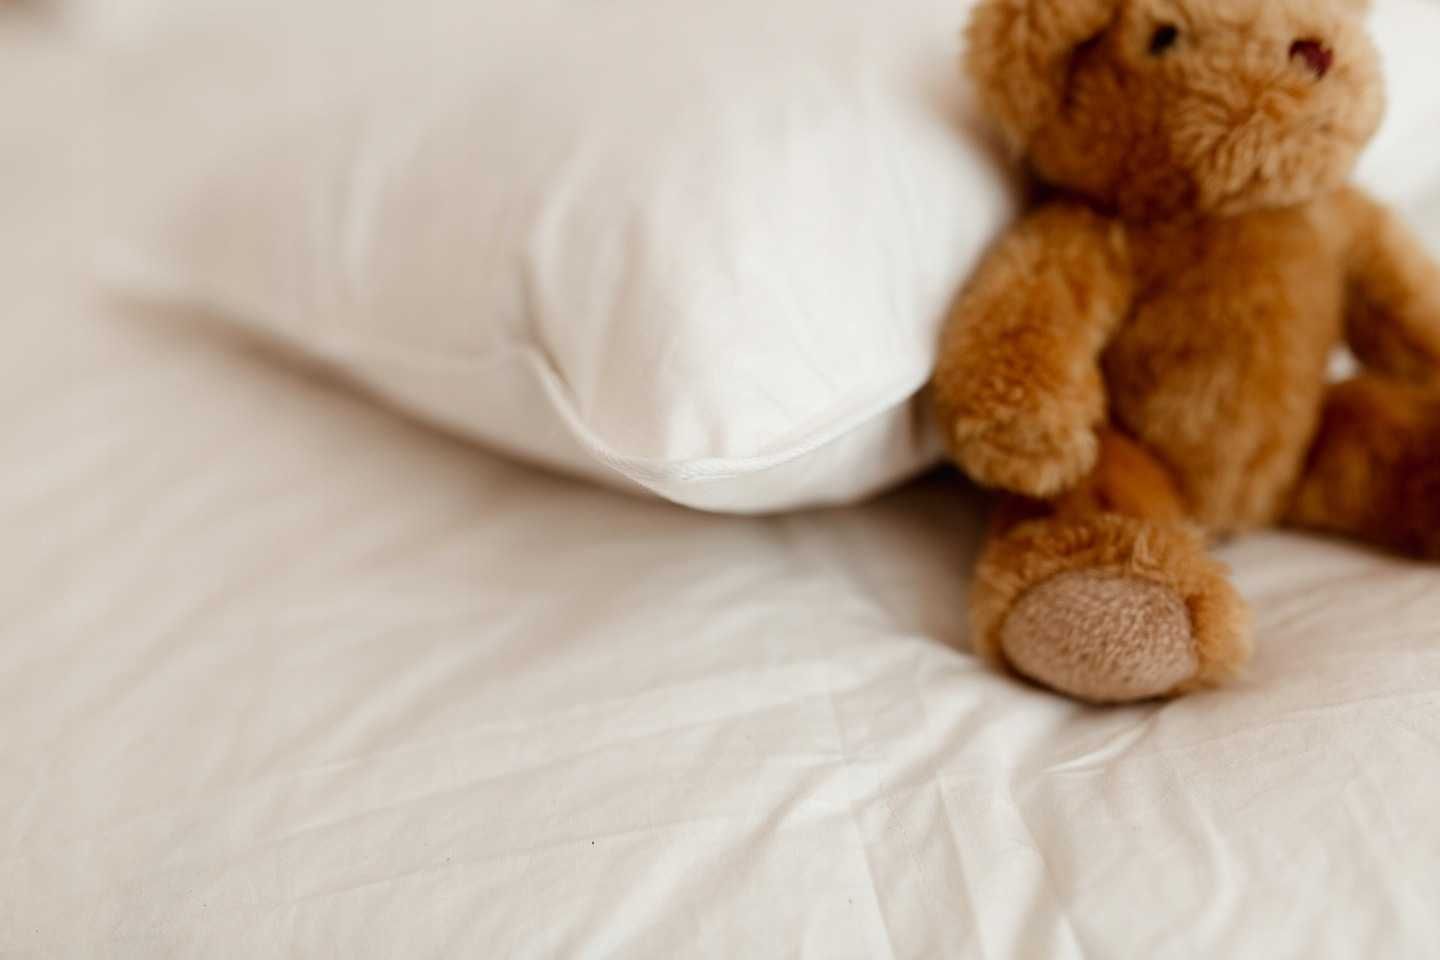 Poduszka do spania z pierza 100% 70cm×80cm 2kg otulona 100% bawelna.